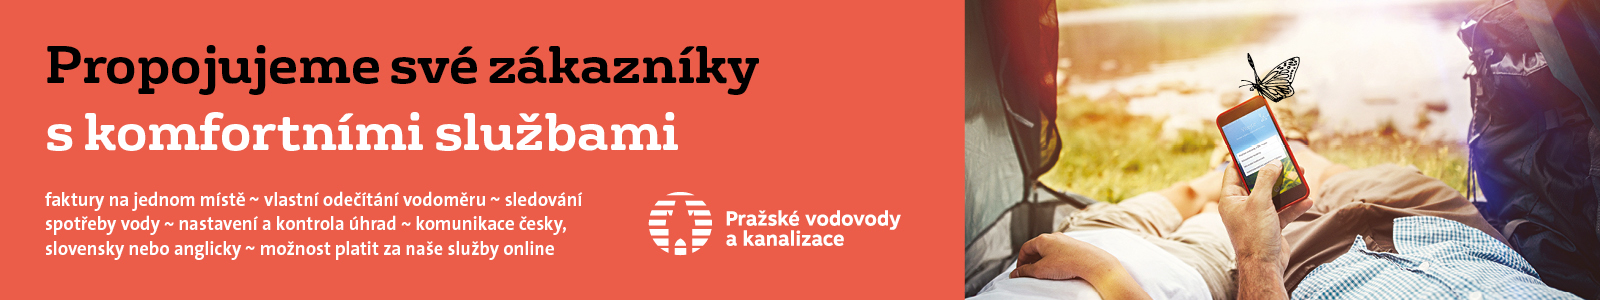 e-news.cz - kurzy